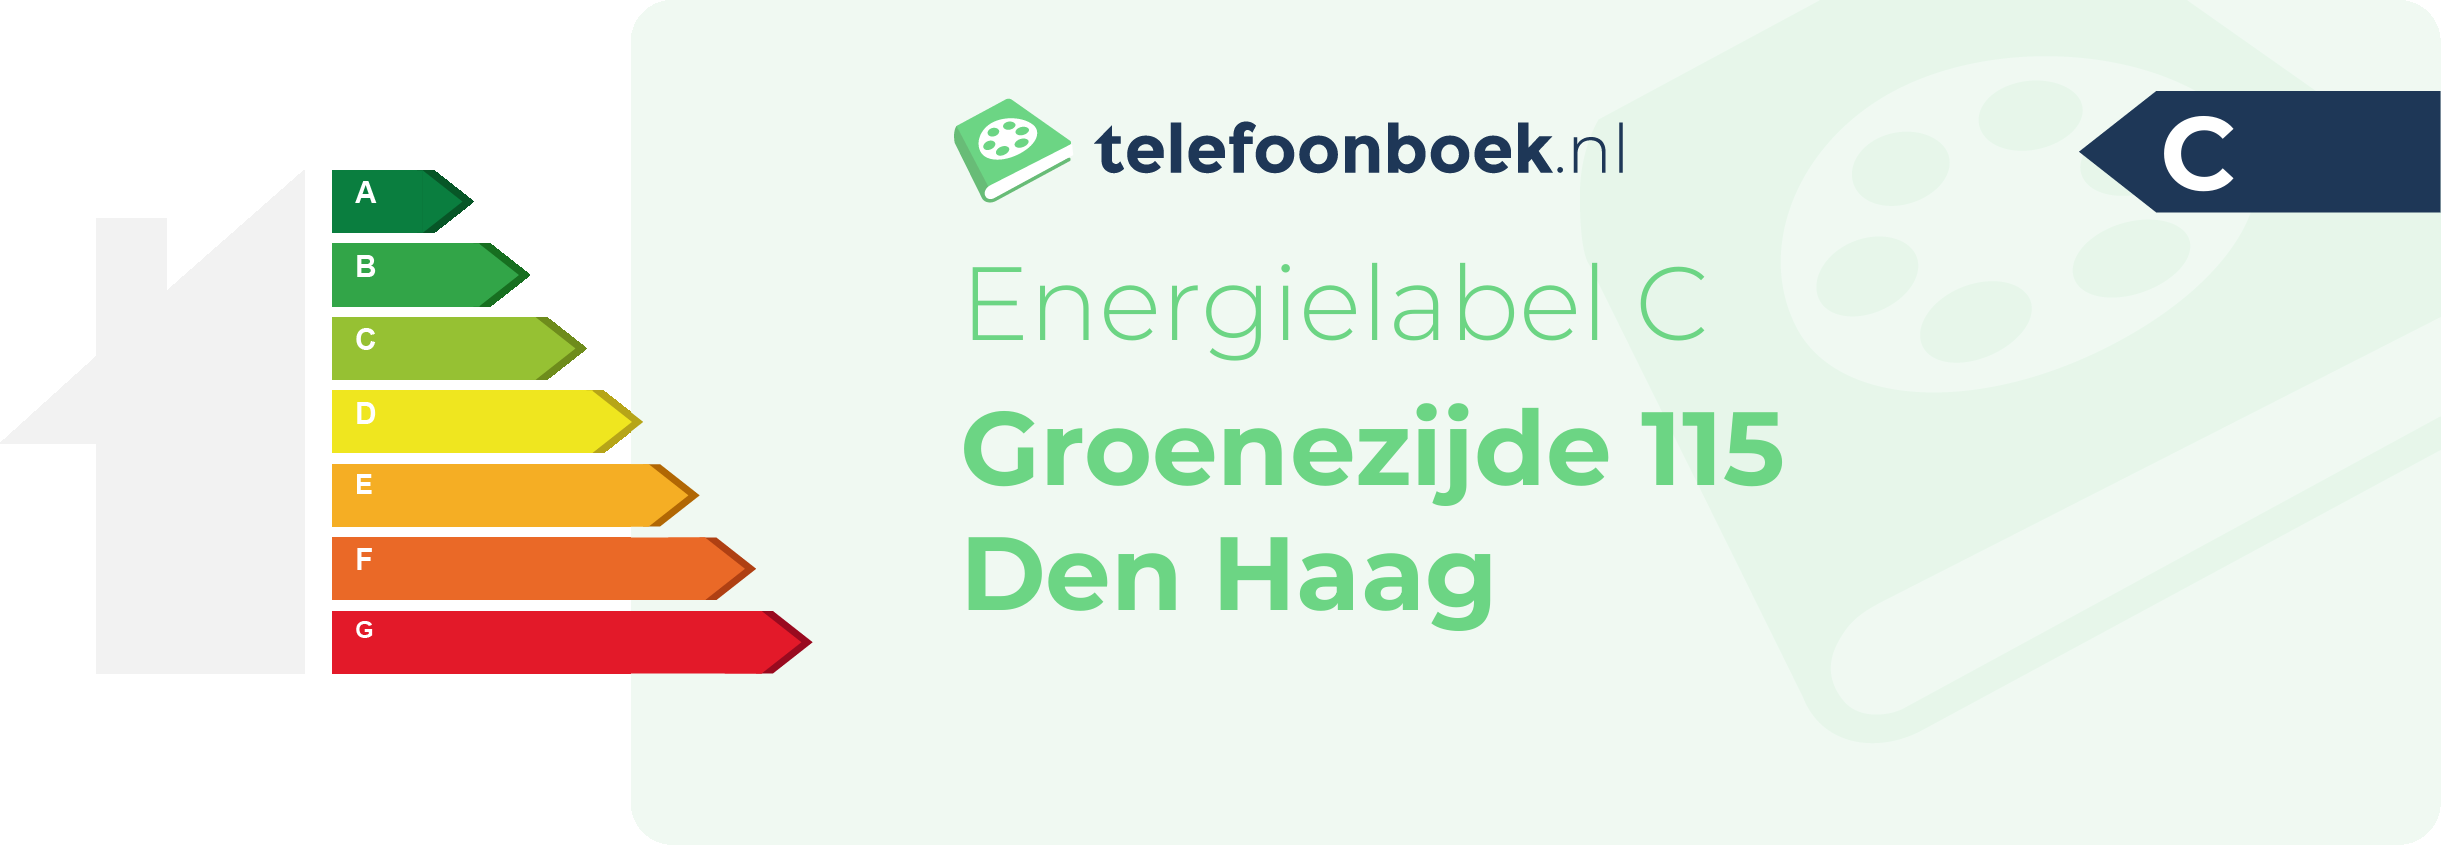 Energielabel Groenezijde 115 Den Haag